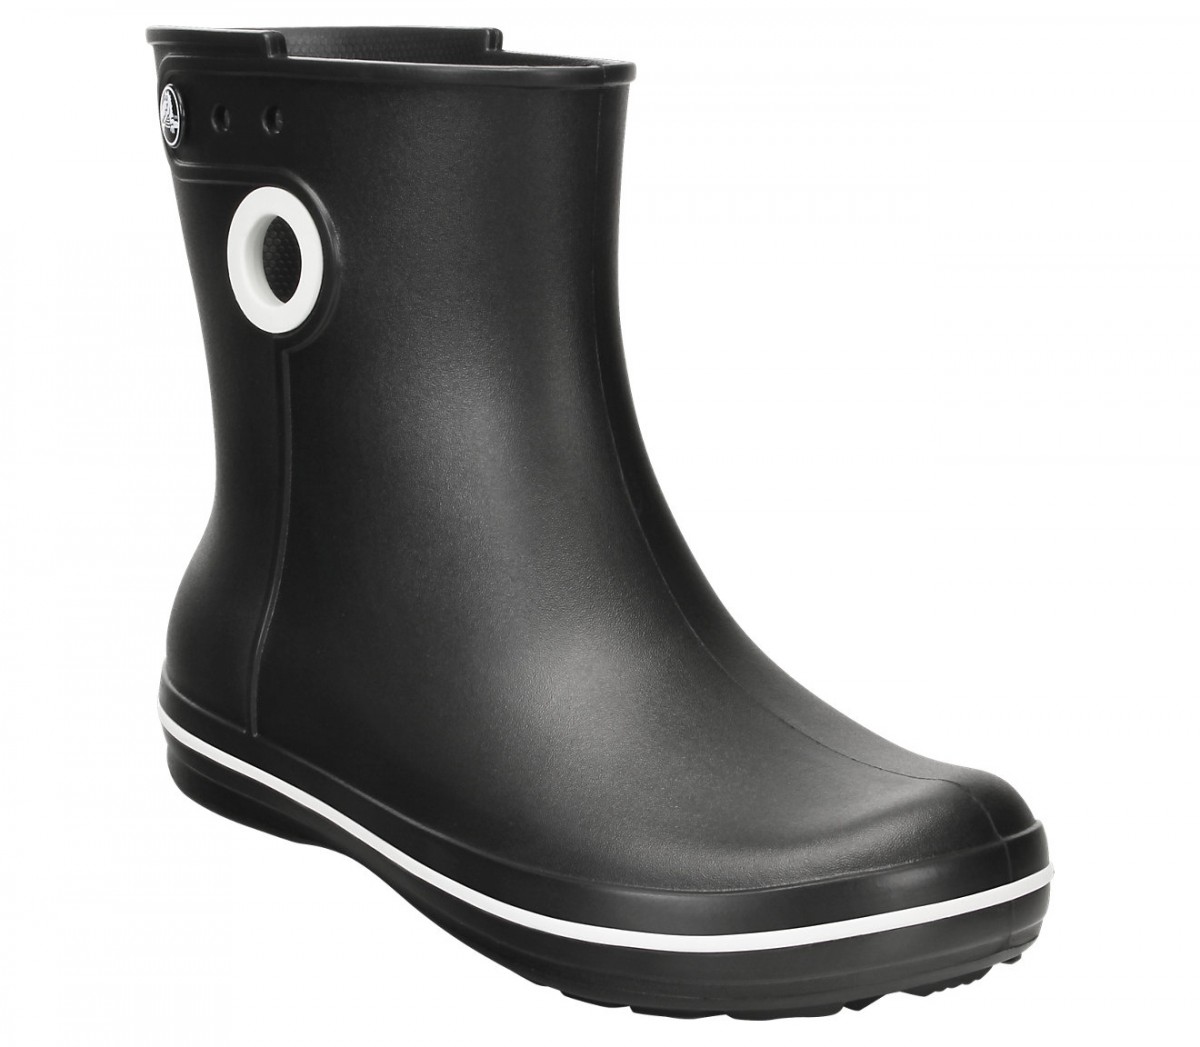 crocs jaunt shorty rain boots women review